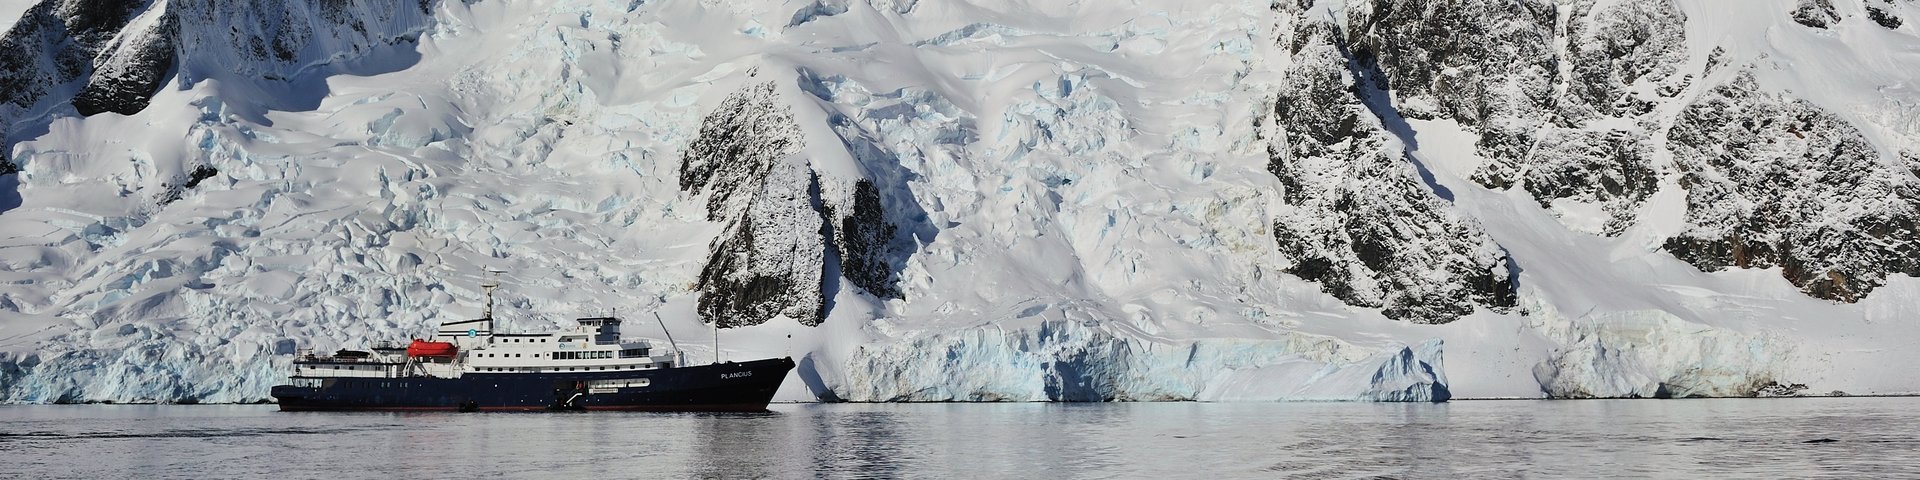 Die Plancius vor einer Bergkette in der Antarktis